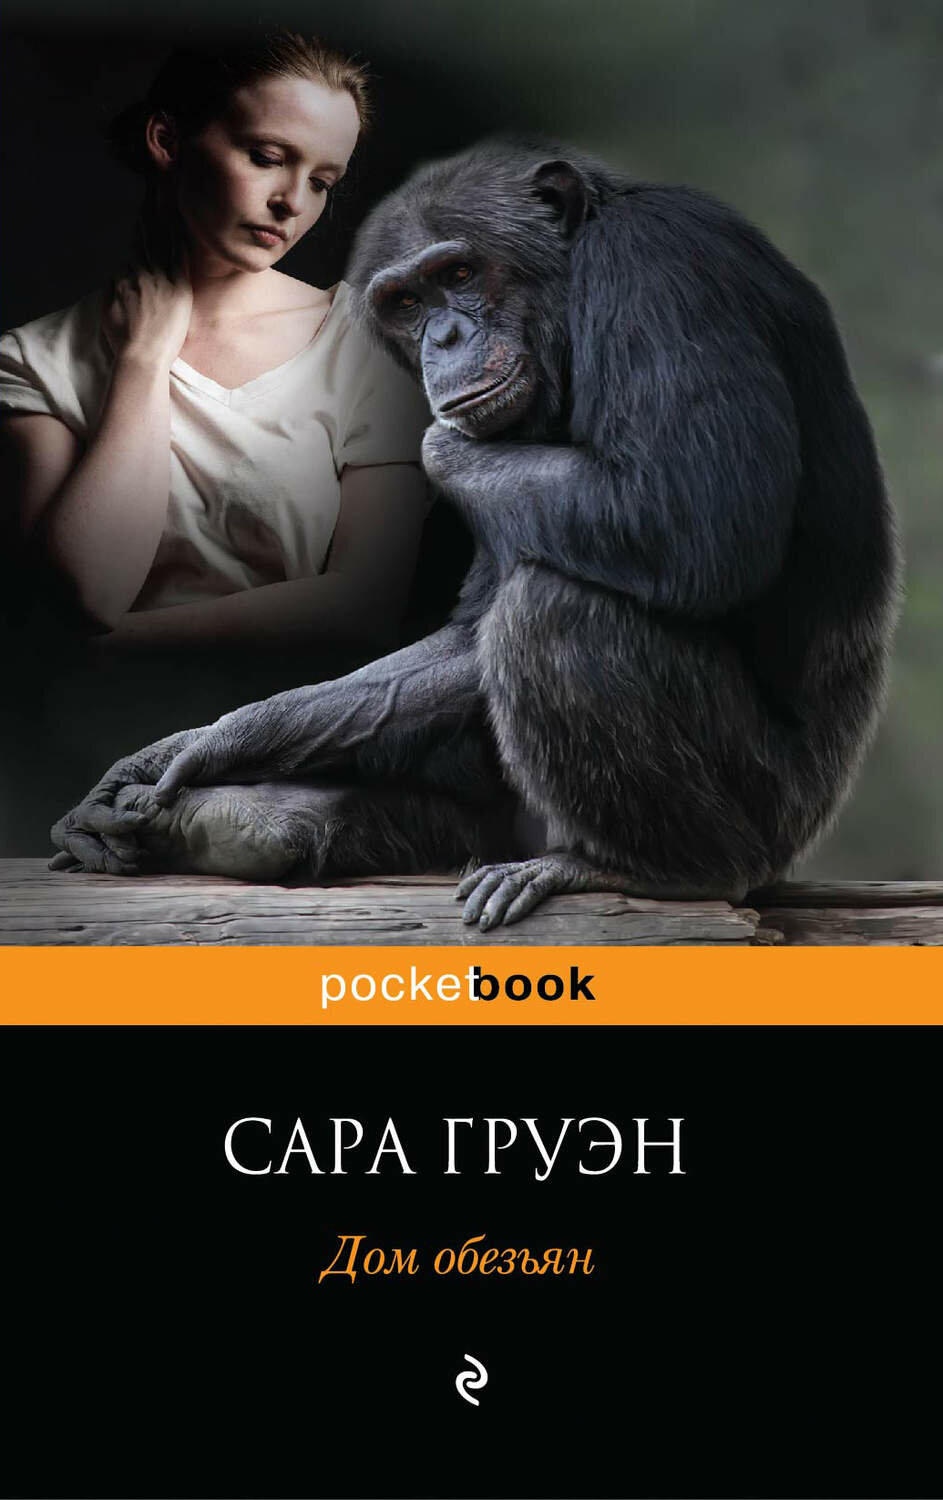 Груэн С. Дом обезьян. Pocket book (обложка)